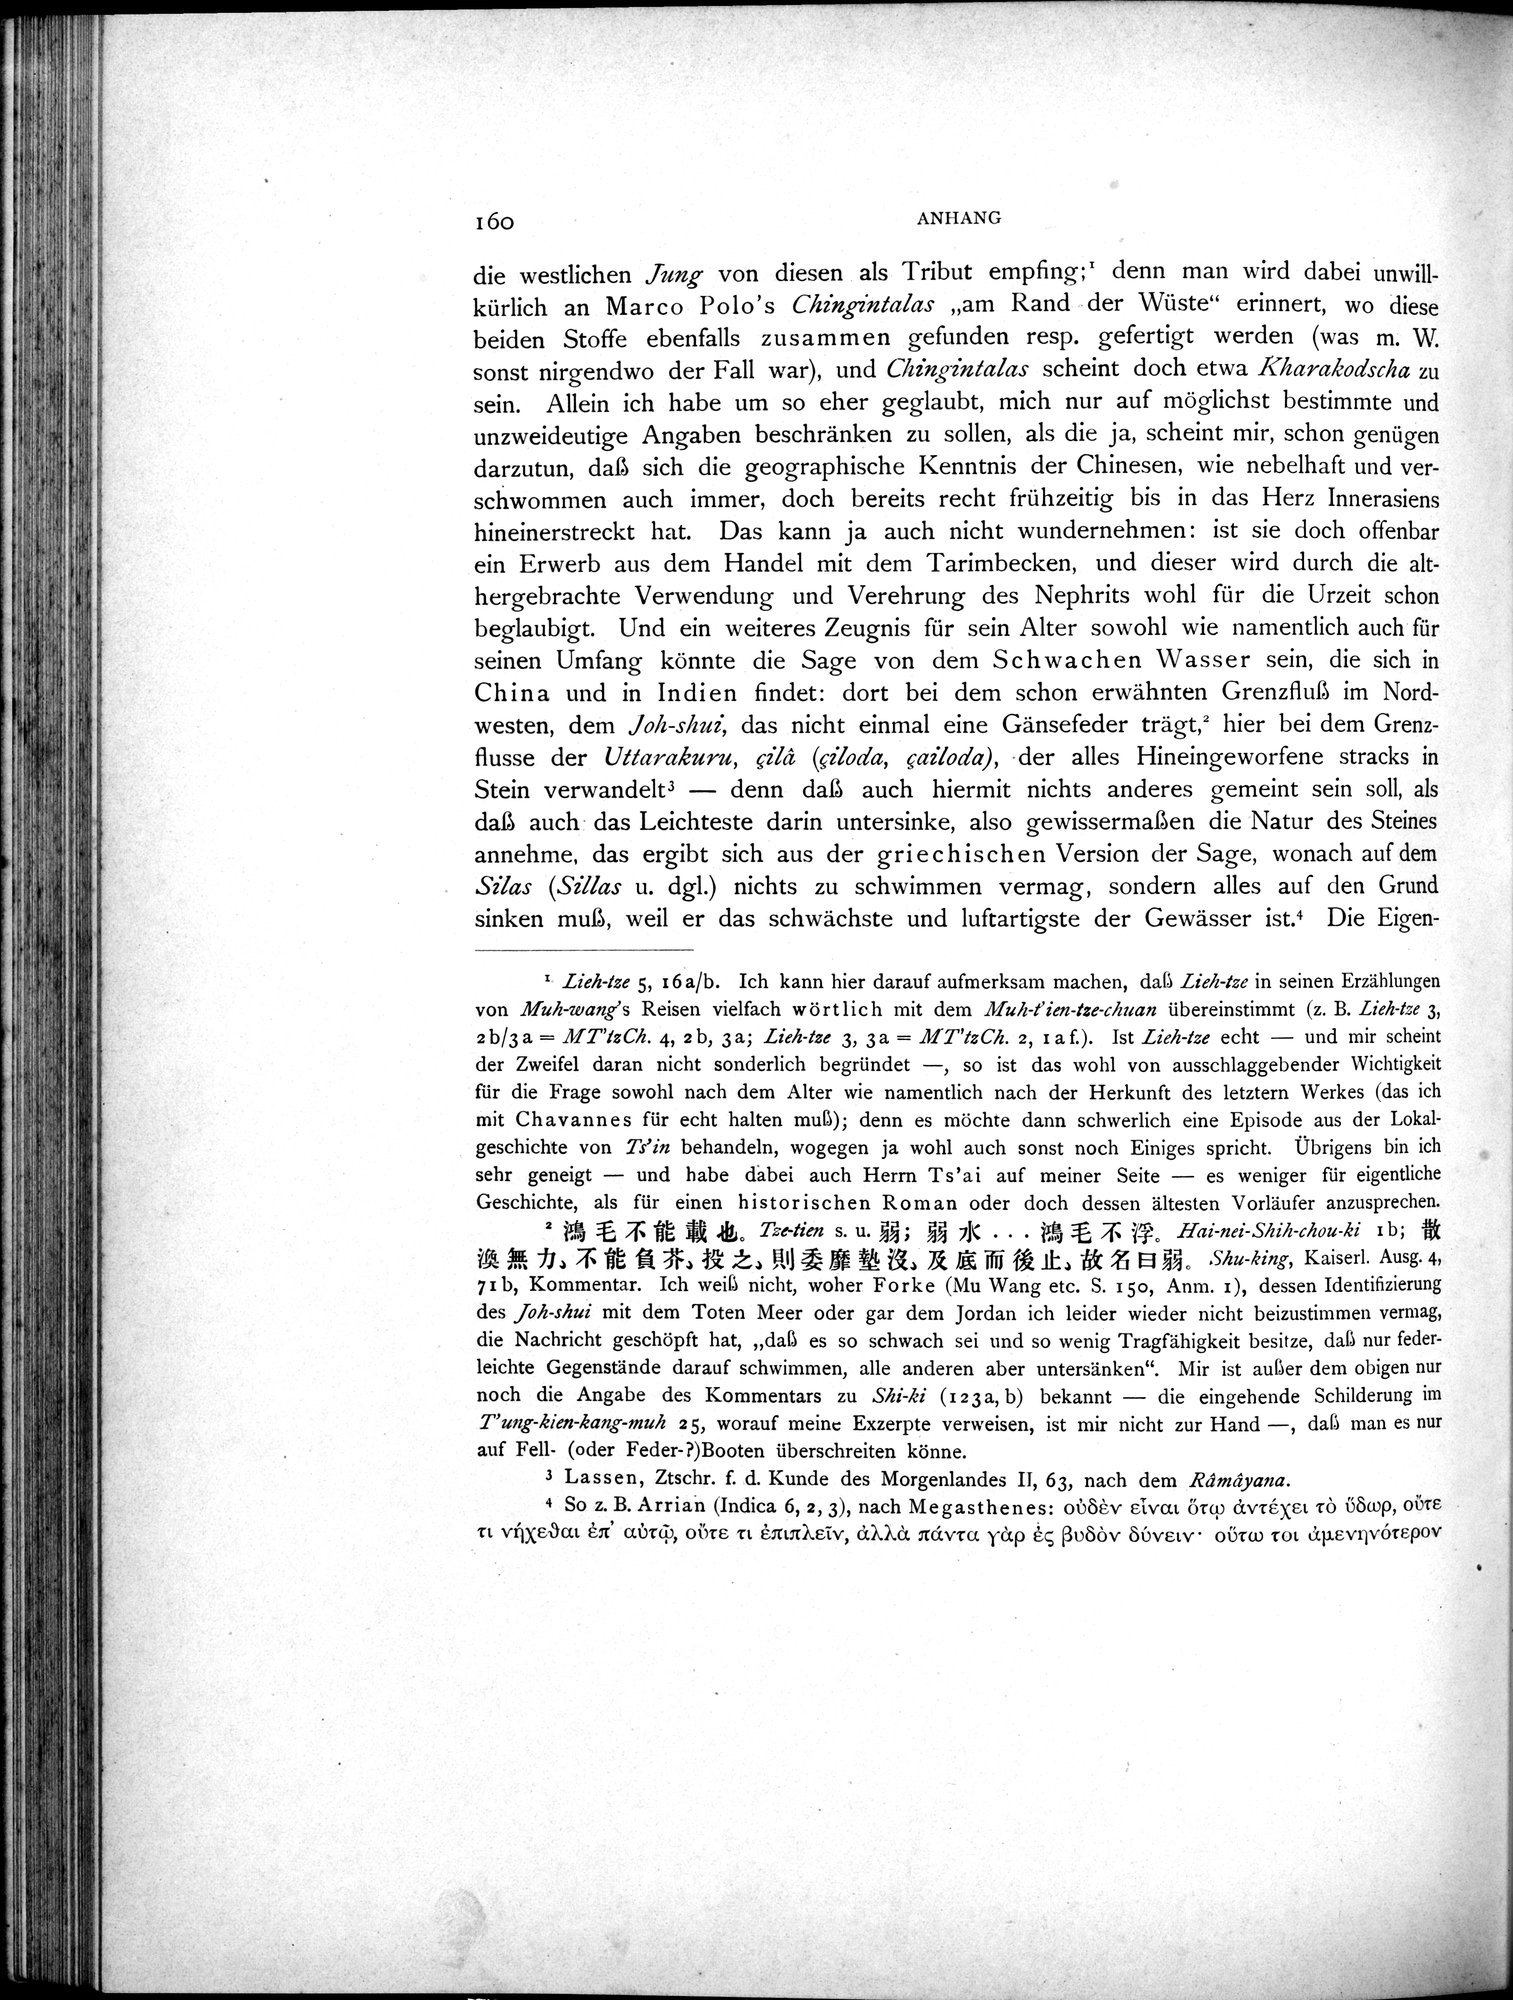 Die Chinesischen Handschriften- und sonstigen Kleinfunde Sven Hedins in Lou-lan : vol.1 / Page 184 (Grayscale High Resolution Image)